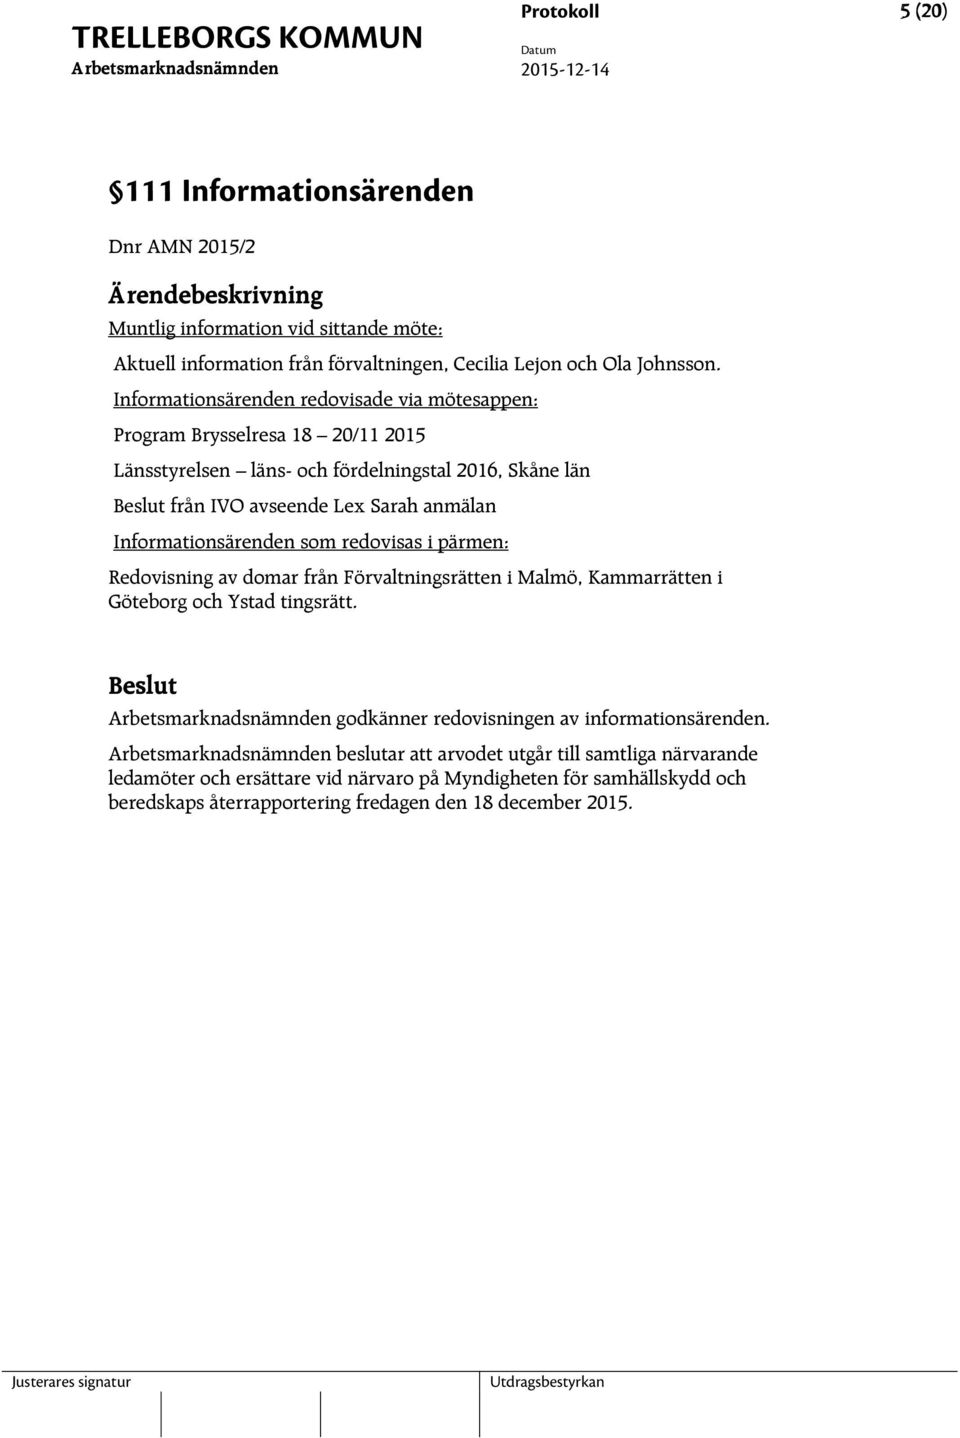 Informationsärenden som redovisas i pärmen: Redovisning av domar från Förvaltningsrätten i Malmö, Kammarrätten i Göteborg och Ystad tingsrätt.